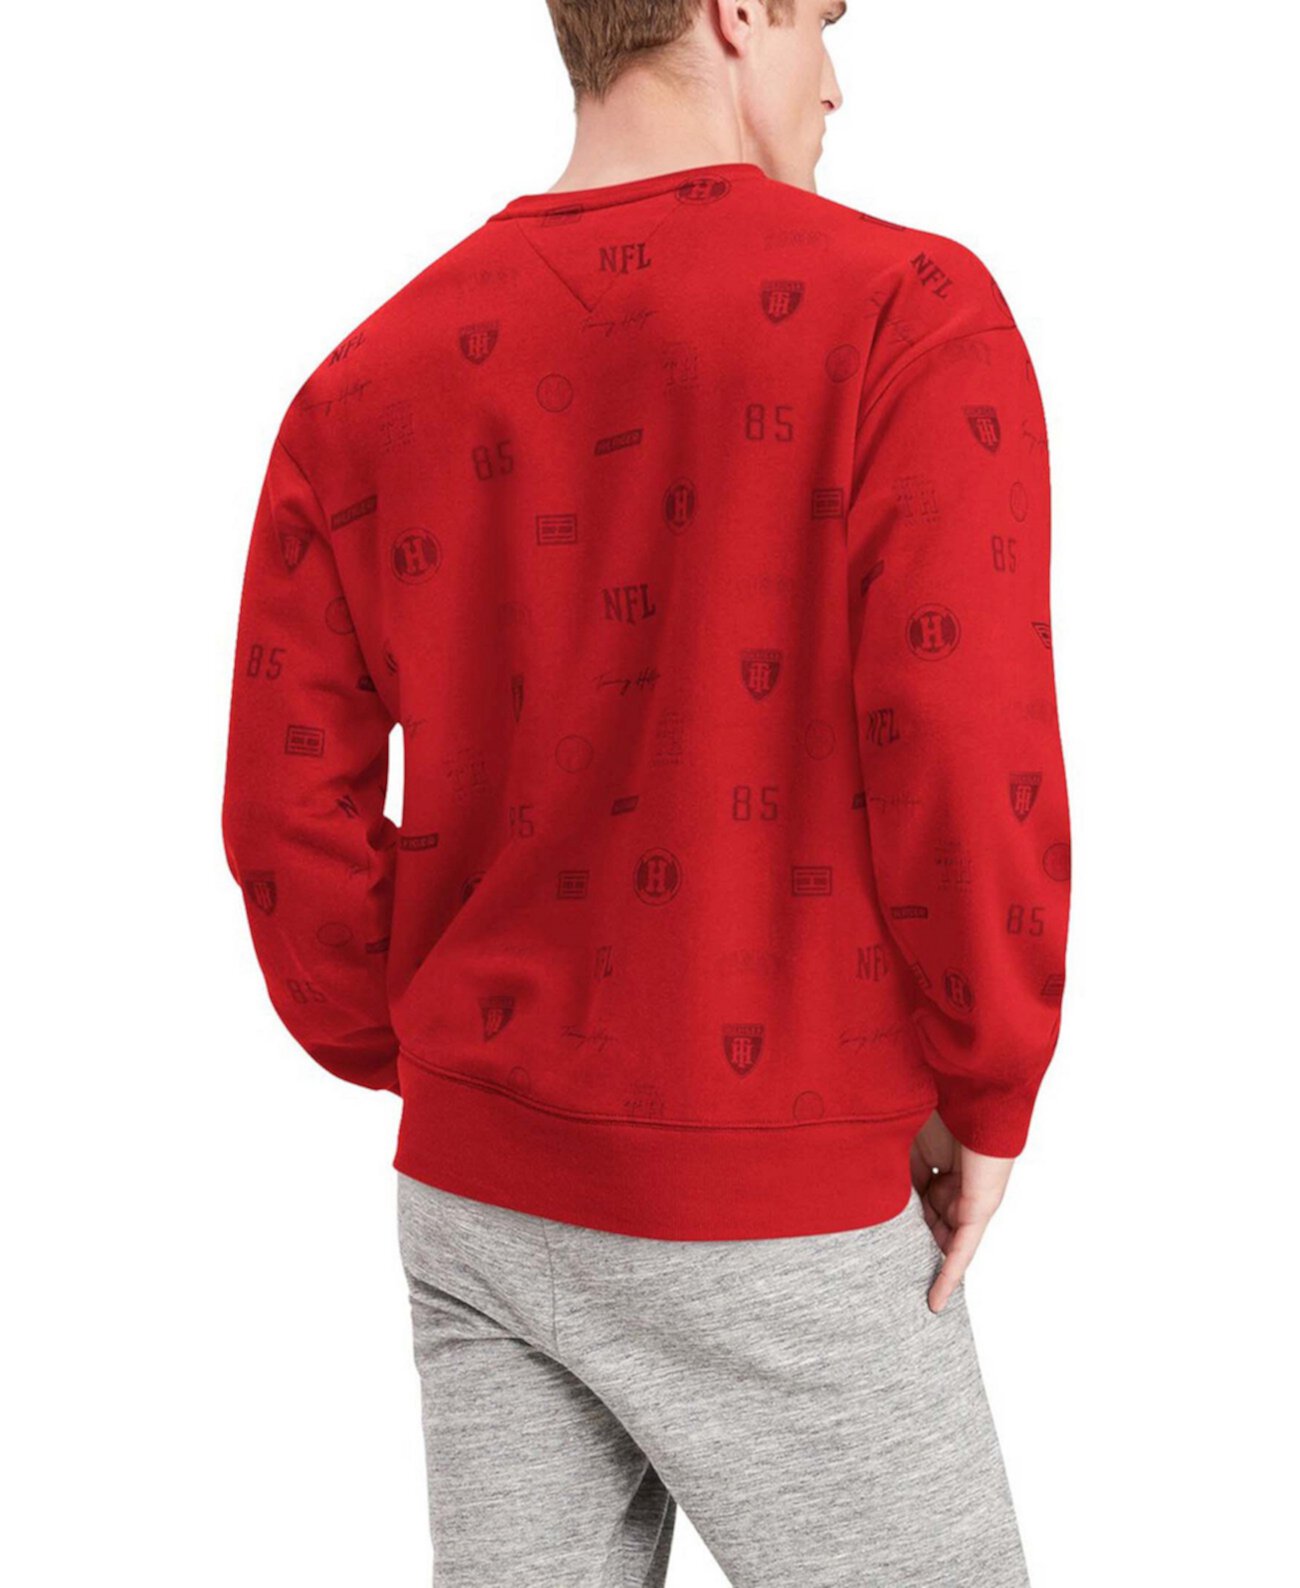 Мужская толстовка-пуловер с графическим рисунком Tampa Bay Buccaneers Reid Red Tommy Hilfiger